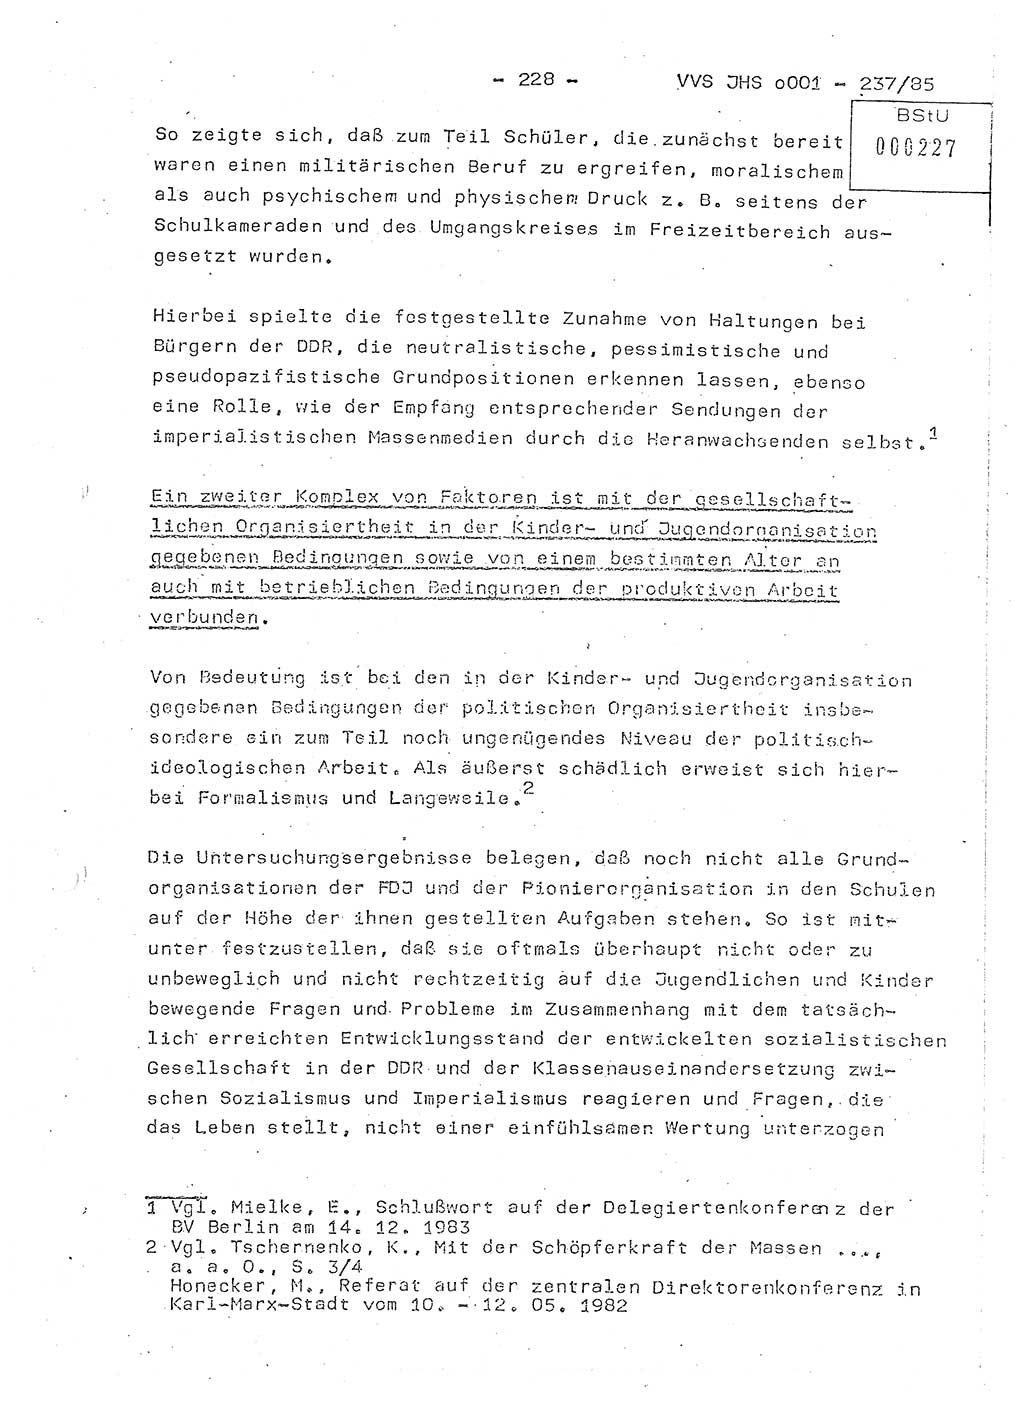 Dissertation Oberstleutnant Peter Jakulski (JHS), Oberstleutnat Christian Rudolph (HA Ⅸ), Major Horst Böttger (ZMD), Major Wolfgang Grüneberg (JHS), Major Albert Meutsch (JHS), Ministerium für Staatssicherheit (MfS) [Deutsche Demokratische Republik (DDR)], Juristische Hochschule (JHS), Vertrauliche Verschlußsache (VVS) o001-237/85, Potsdam 1985, Seite 228 (Diss. MfS DDR JHS VVS o001-237/85 1985, S. 228)